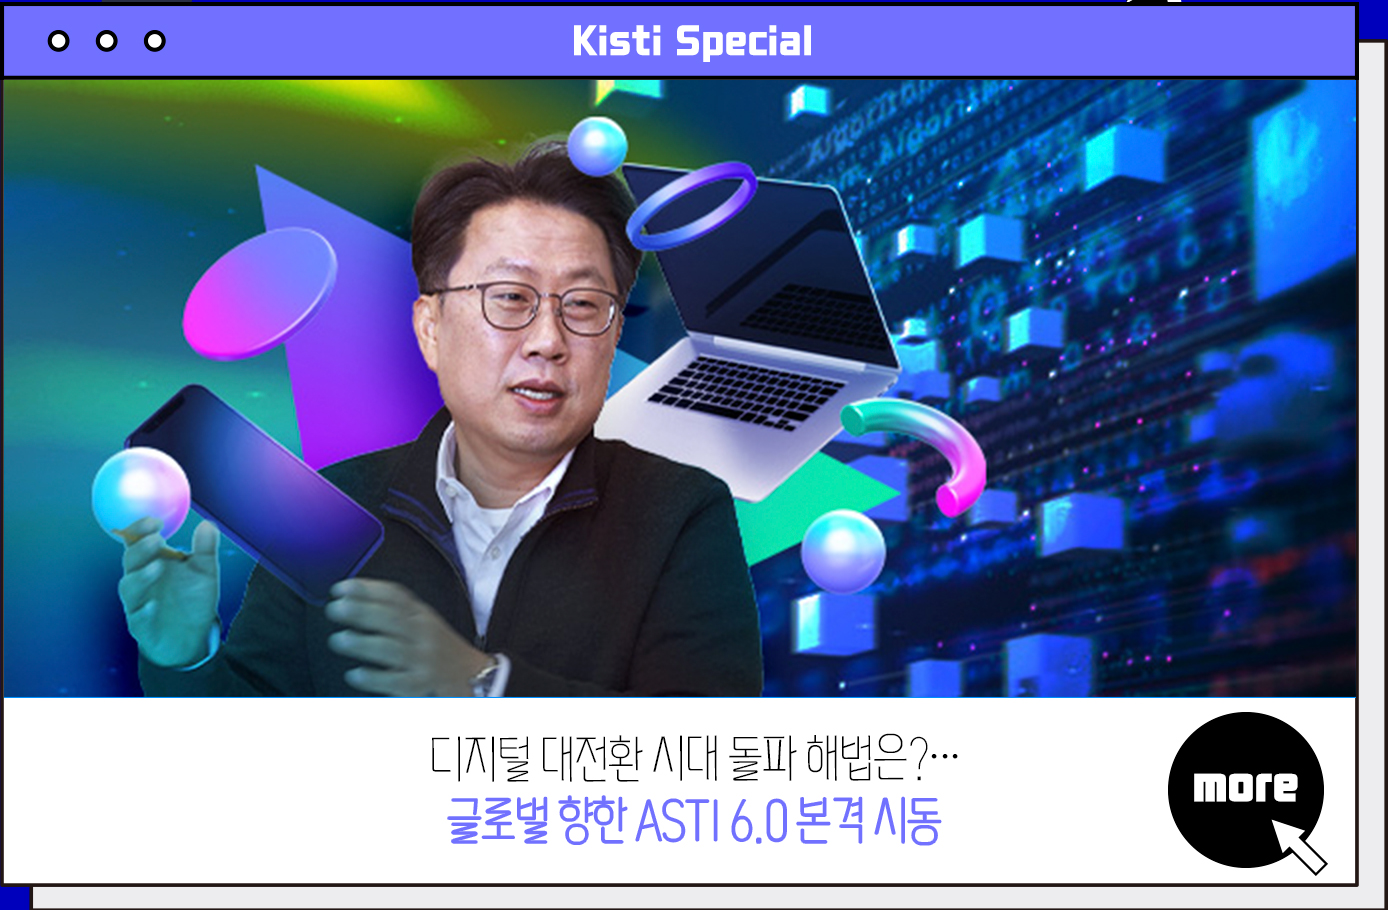 Kisti Special 디지털 대전환 시대 돌파 해법은?···글로벌 향한 ASTI 6.0 본격 시동 more